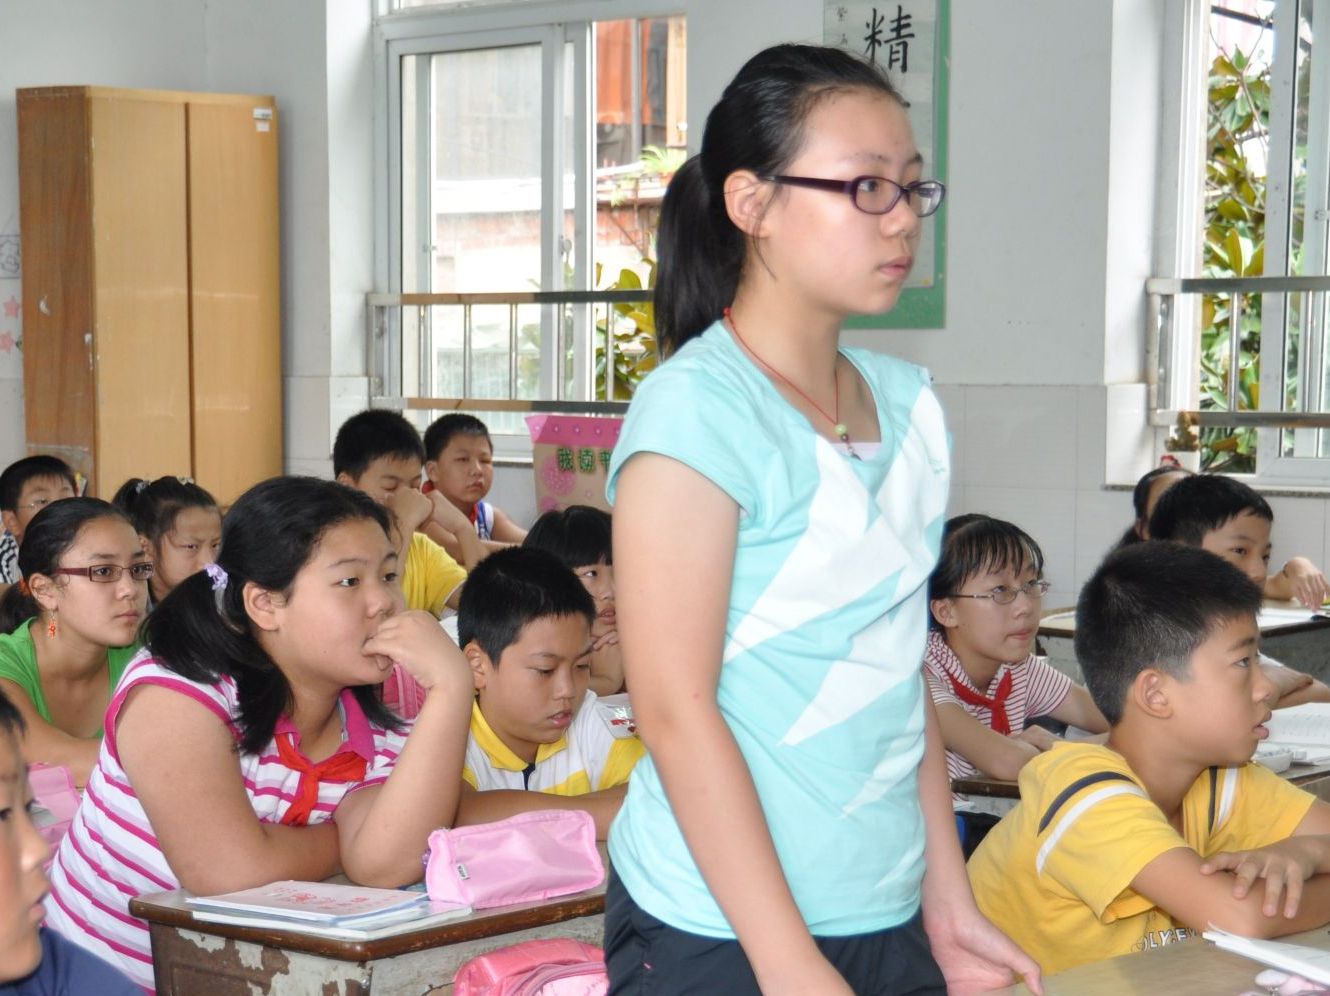 Psychische Störungen in Chinas Bevölkerung nehmen zu: 20 Schulkinder bei Hammer-Attacke in Peking verletzt